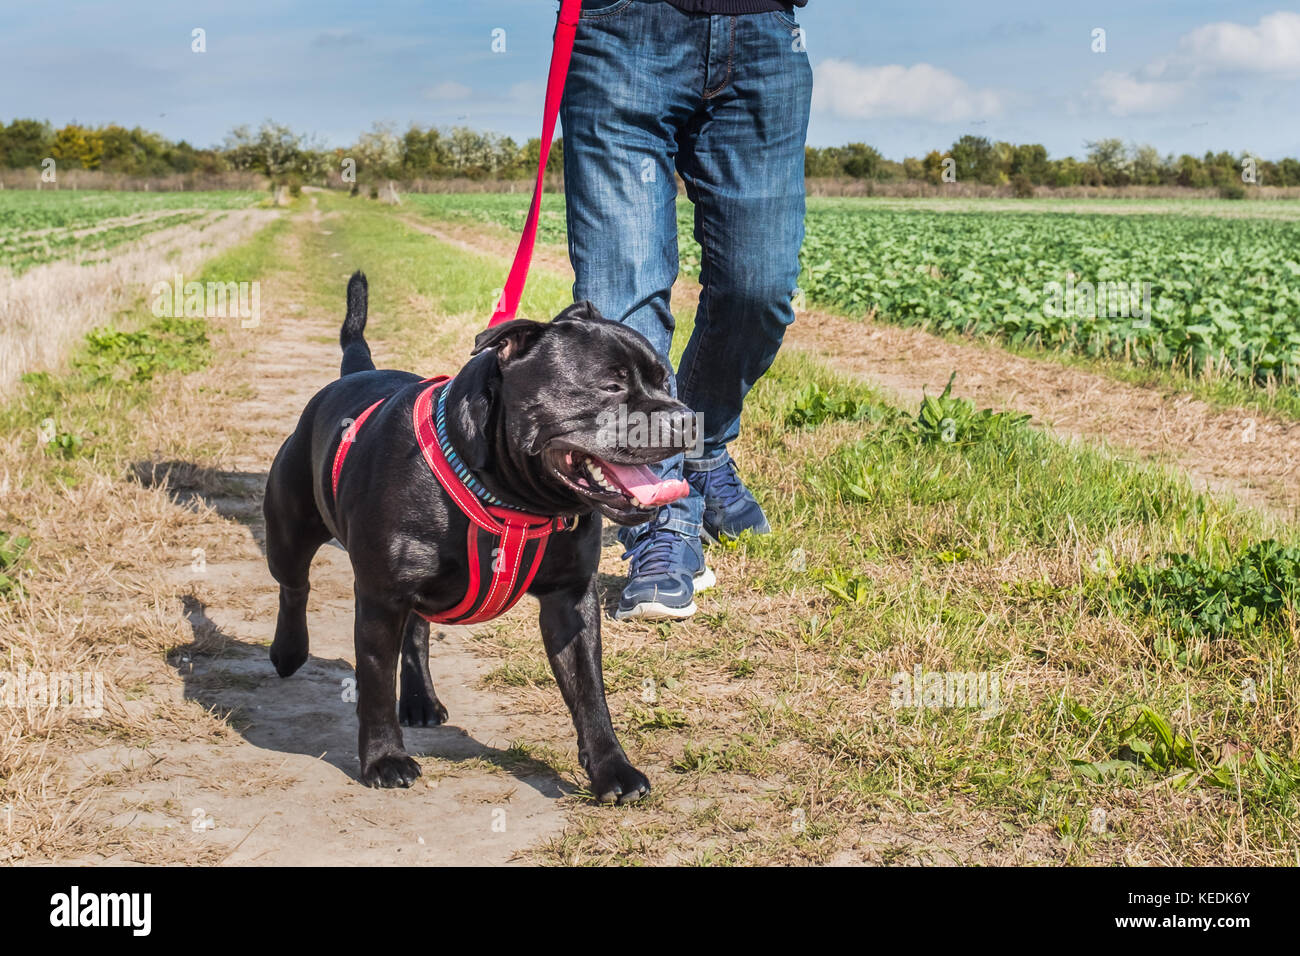 Uomo con jeans e scarpe da ginnastica a piedi una staffordshire bull terrier cane al guinzaglio, un filo rosso con un cavo rosso. Essi sono in un campo in campagna Foto Stock